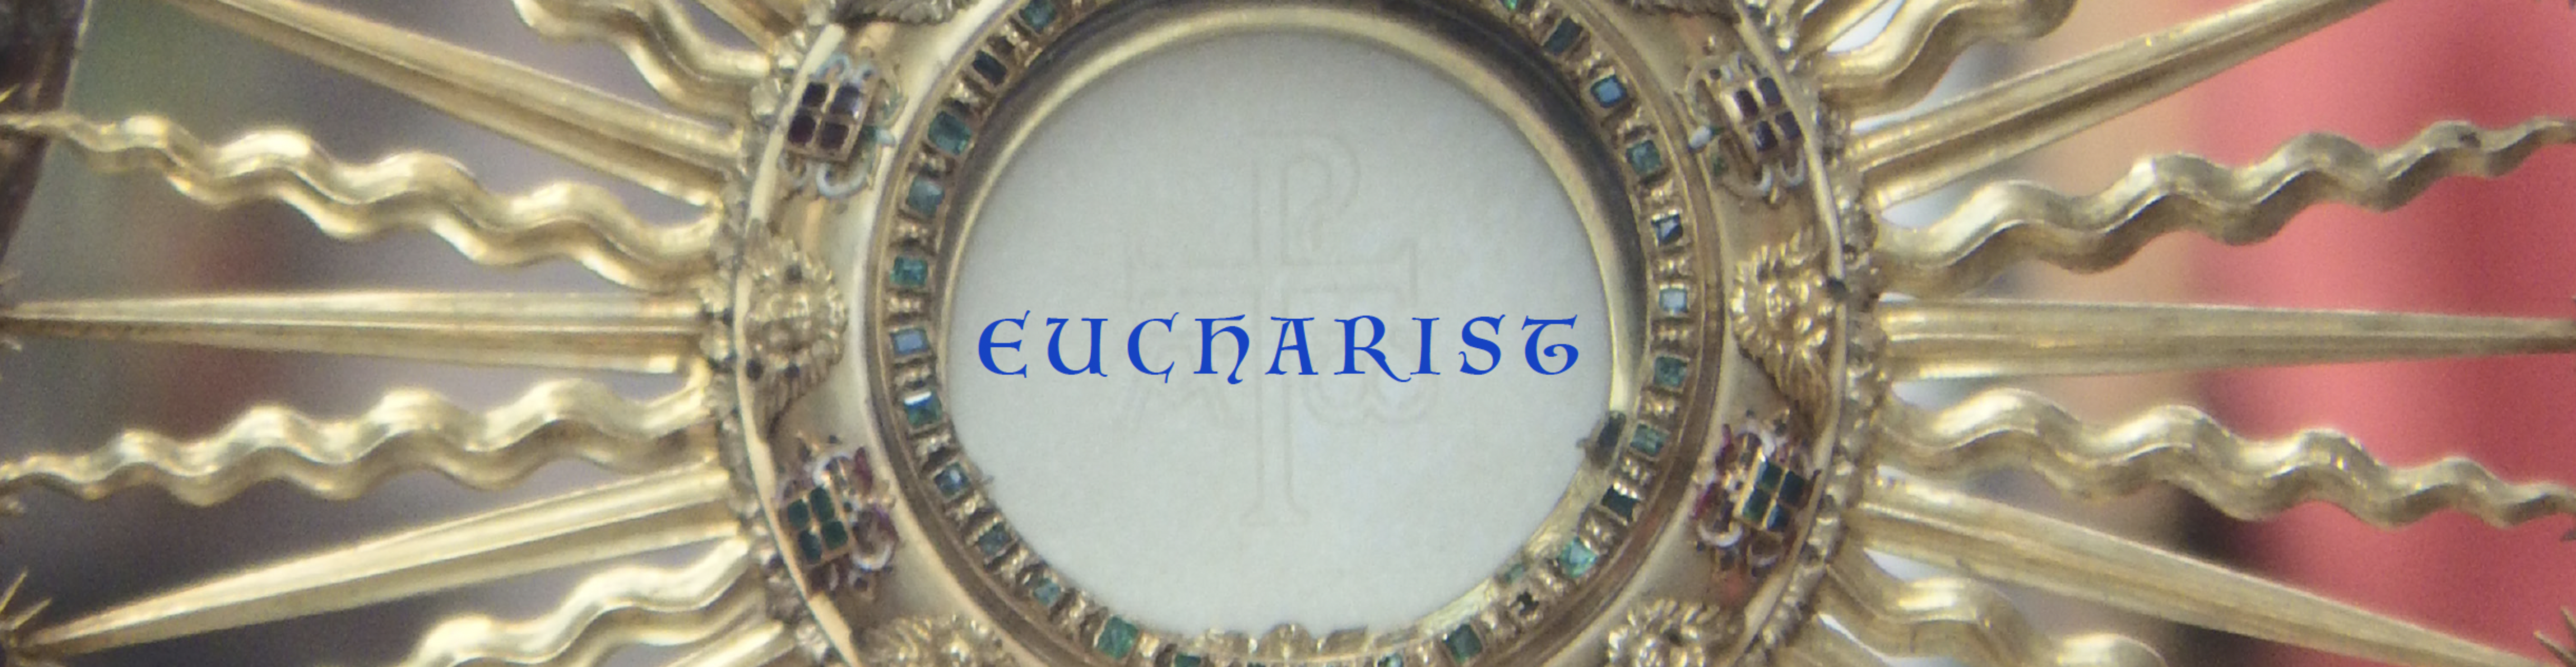 Eucharist Cema